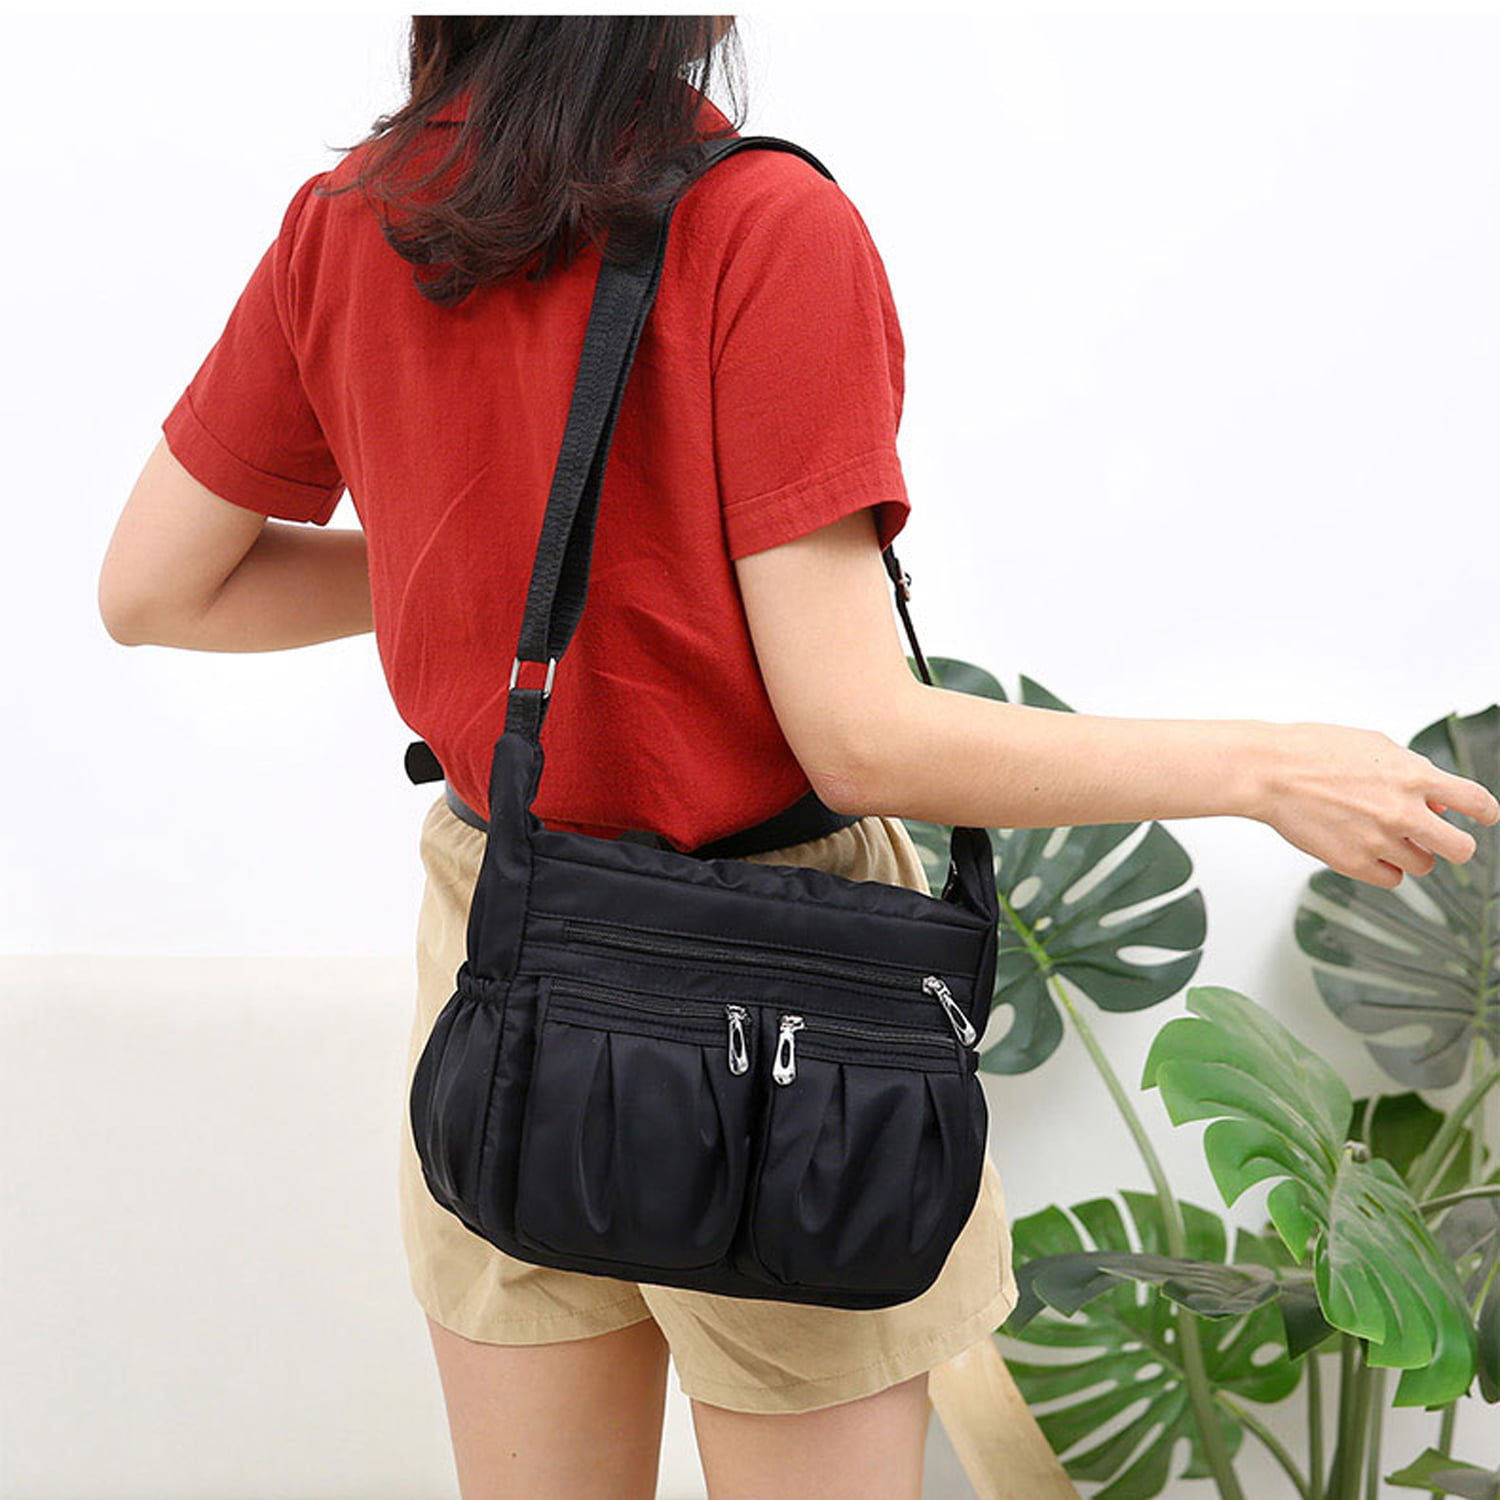 Hawee Crossbody Bag for Women - Multi-Pocket Shoulder Bag Lightweight Messenger Bag Casual Printed Purse Handbag Travel Bag, Women's, Size: One-Size